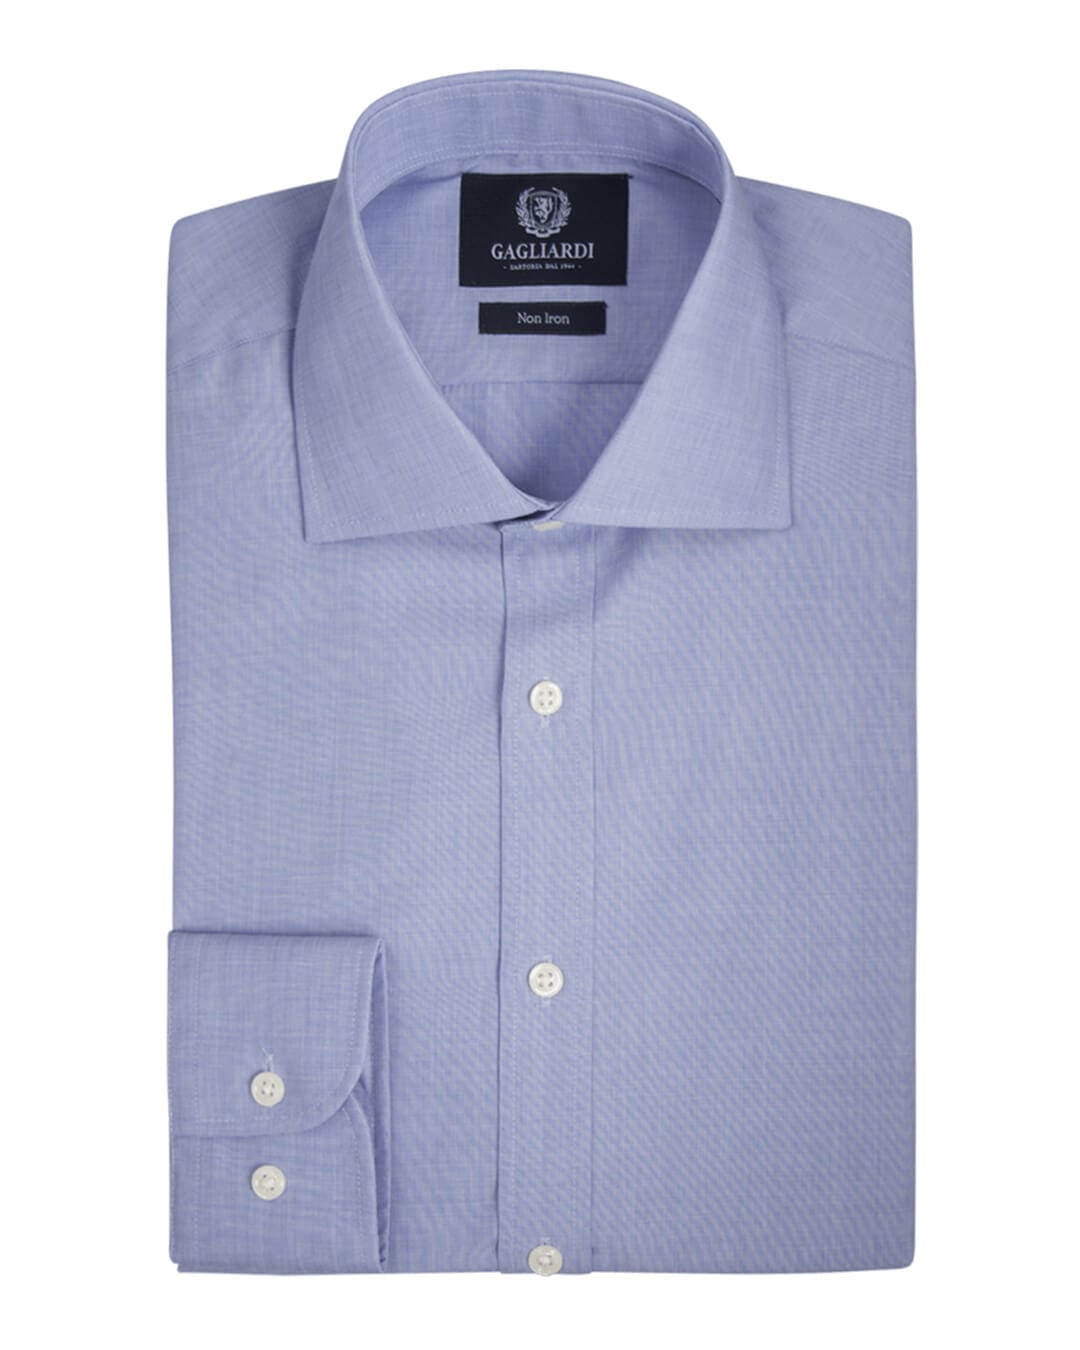 Gagliardi Shirts Gagliardi Royal Blue End On End Plain Slim Fit Cutaway Collar Shirt